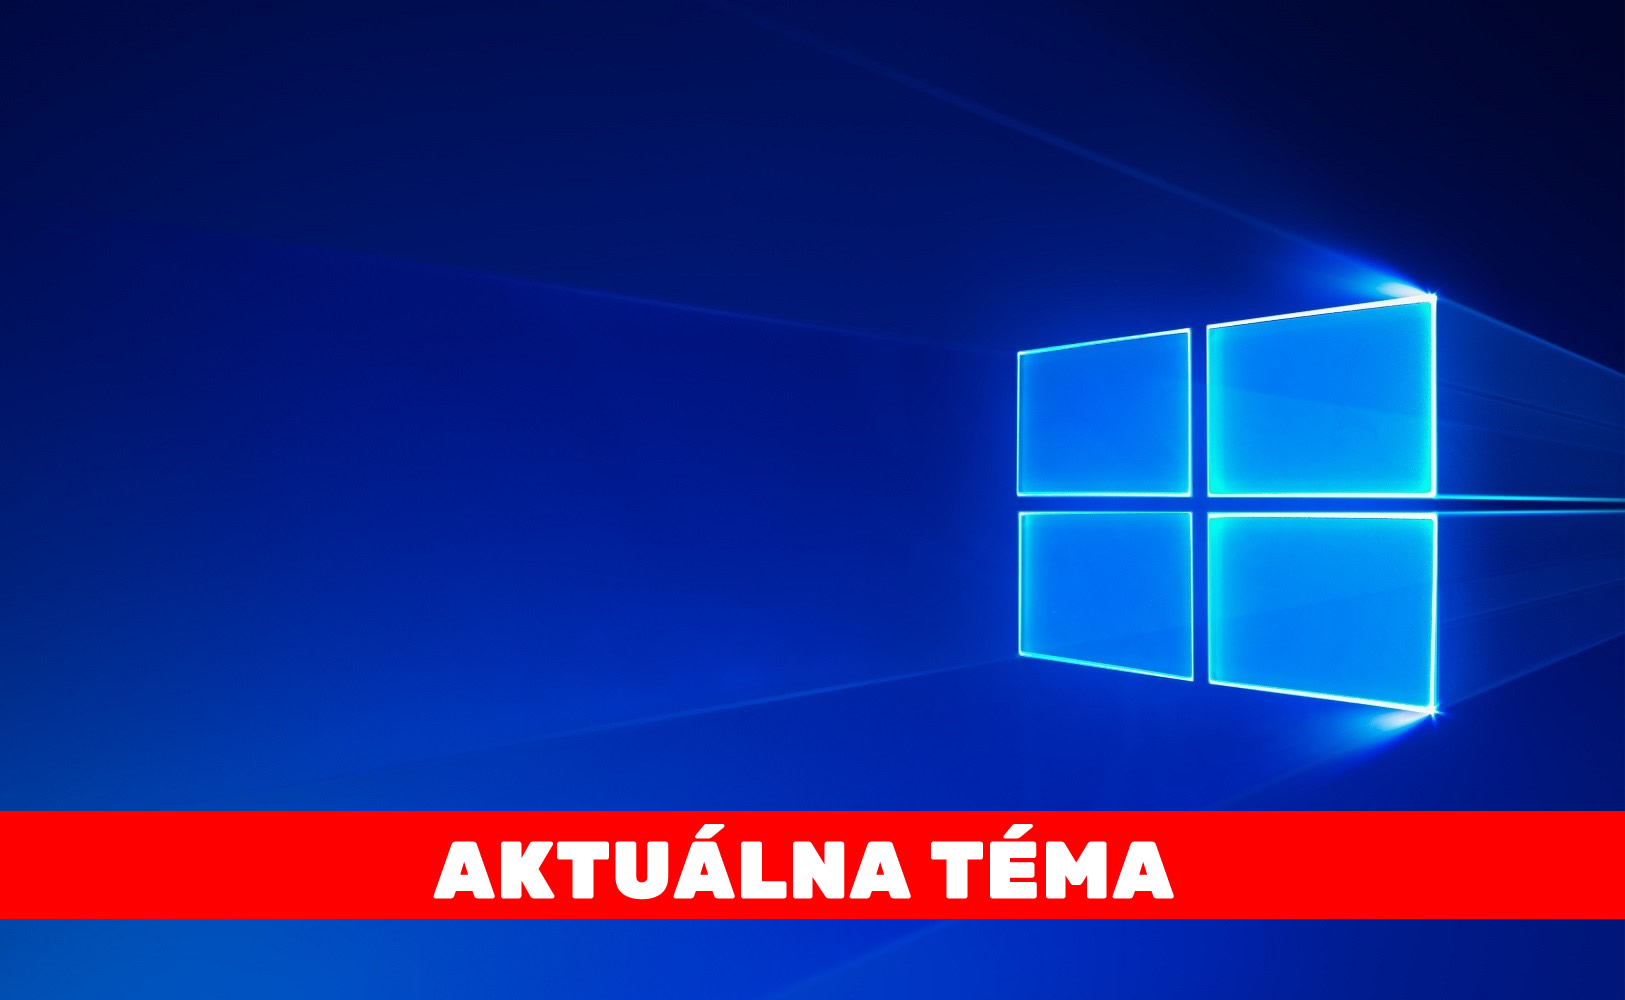 windows 10 tit 2